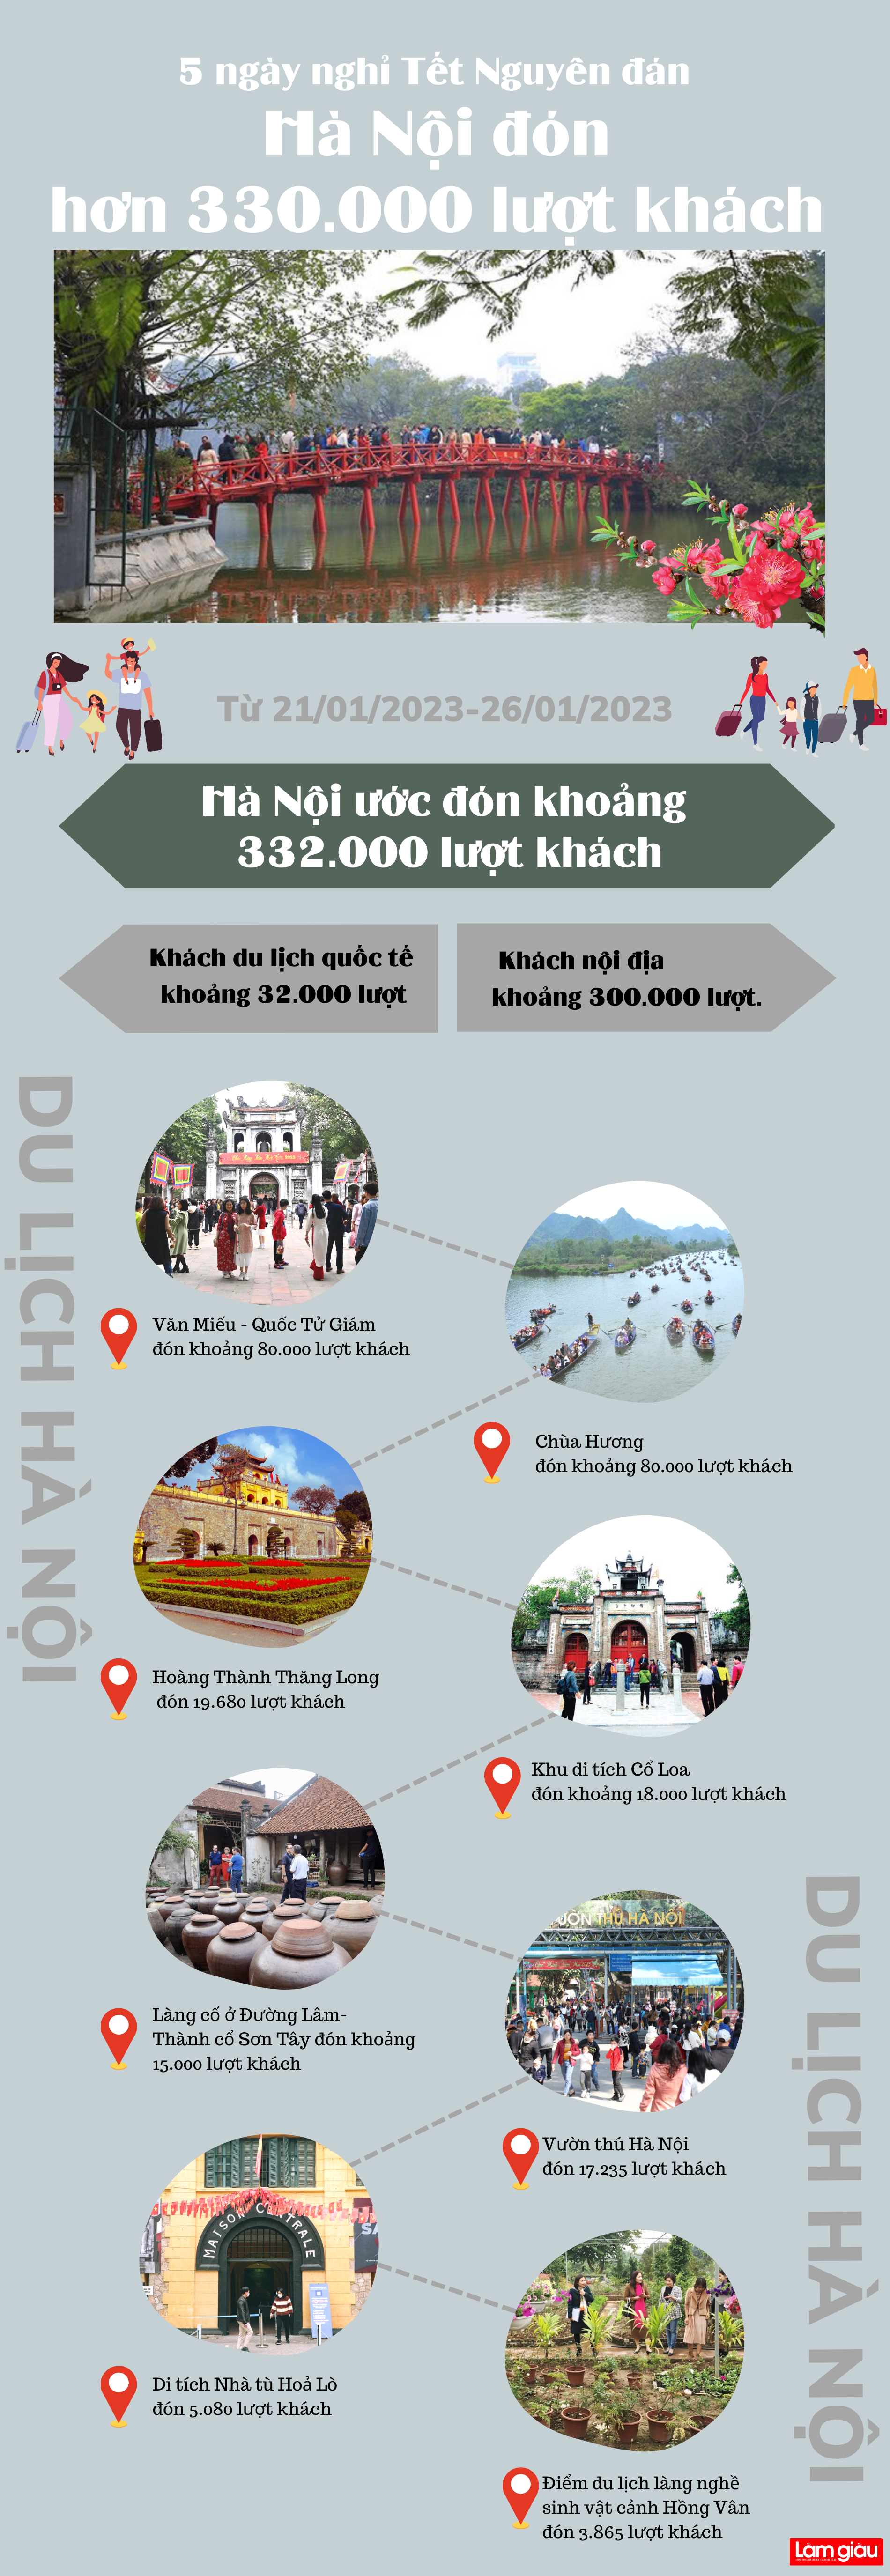 Hơn 330.000 lượt khách đến Hà Nội dịp Tết Nguyên đán